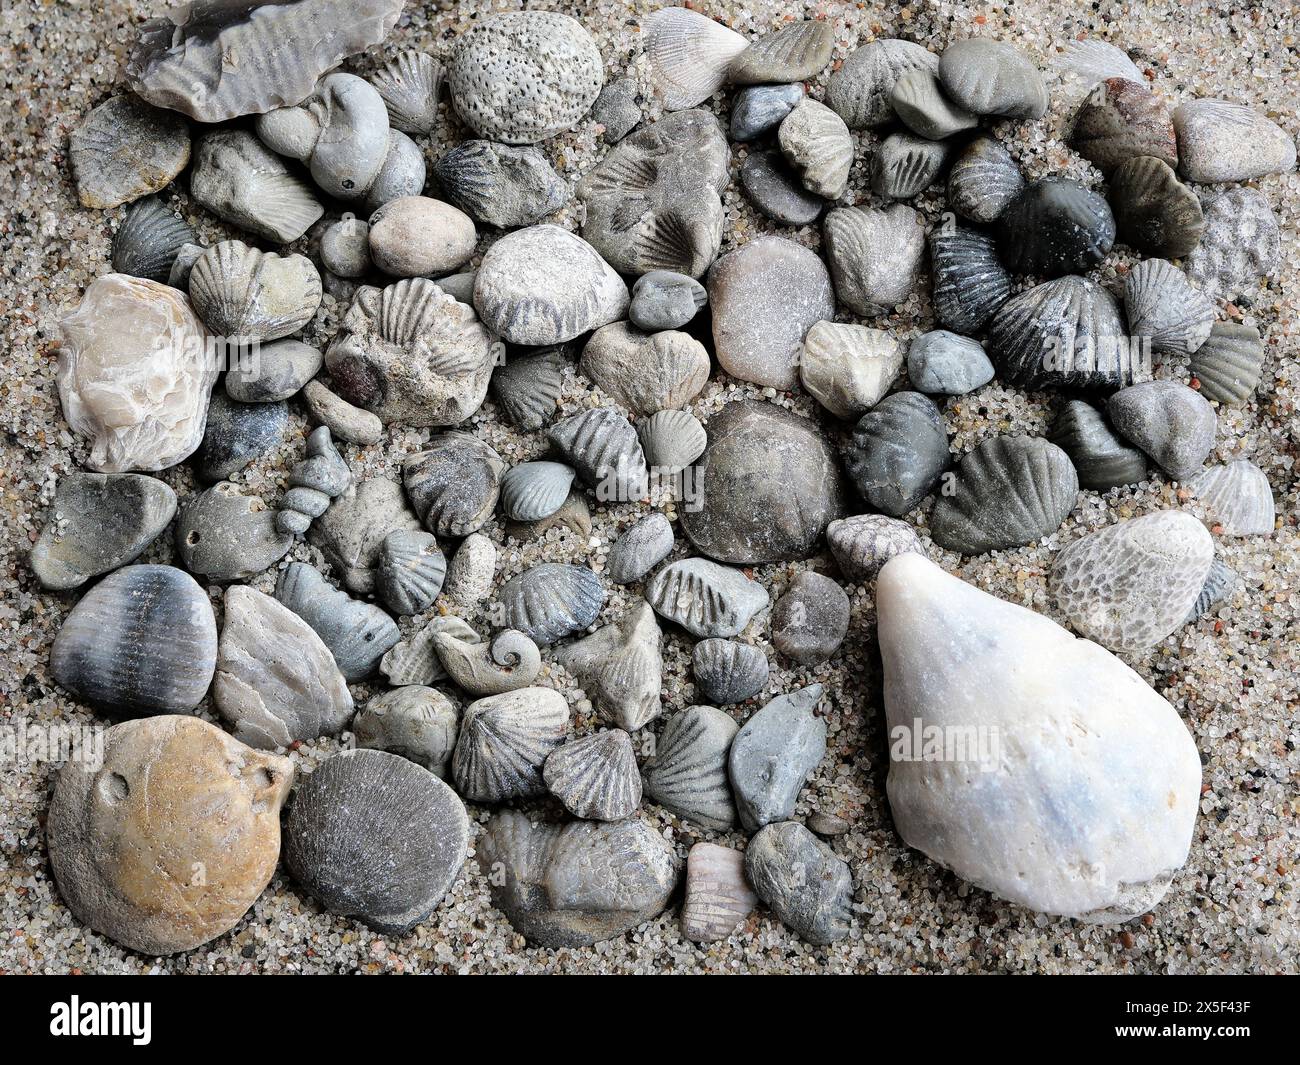 Fossile Schätze aus der Ostsee: Versteinerte Muscheln und Meereskorallen, die an antike Geheimnisse erinnern. Ideal für Sammler und Dekoration. Stockfoto